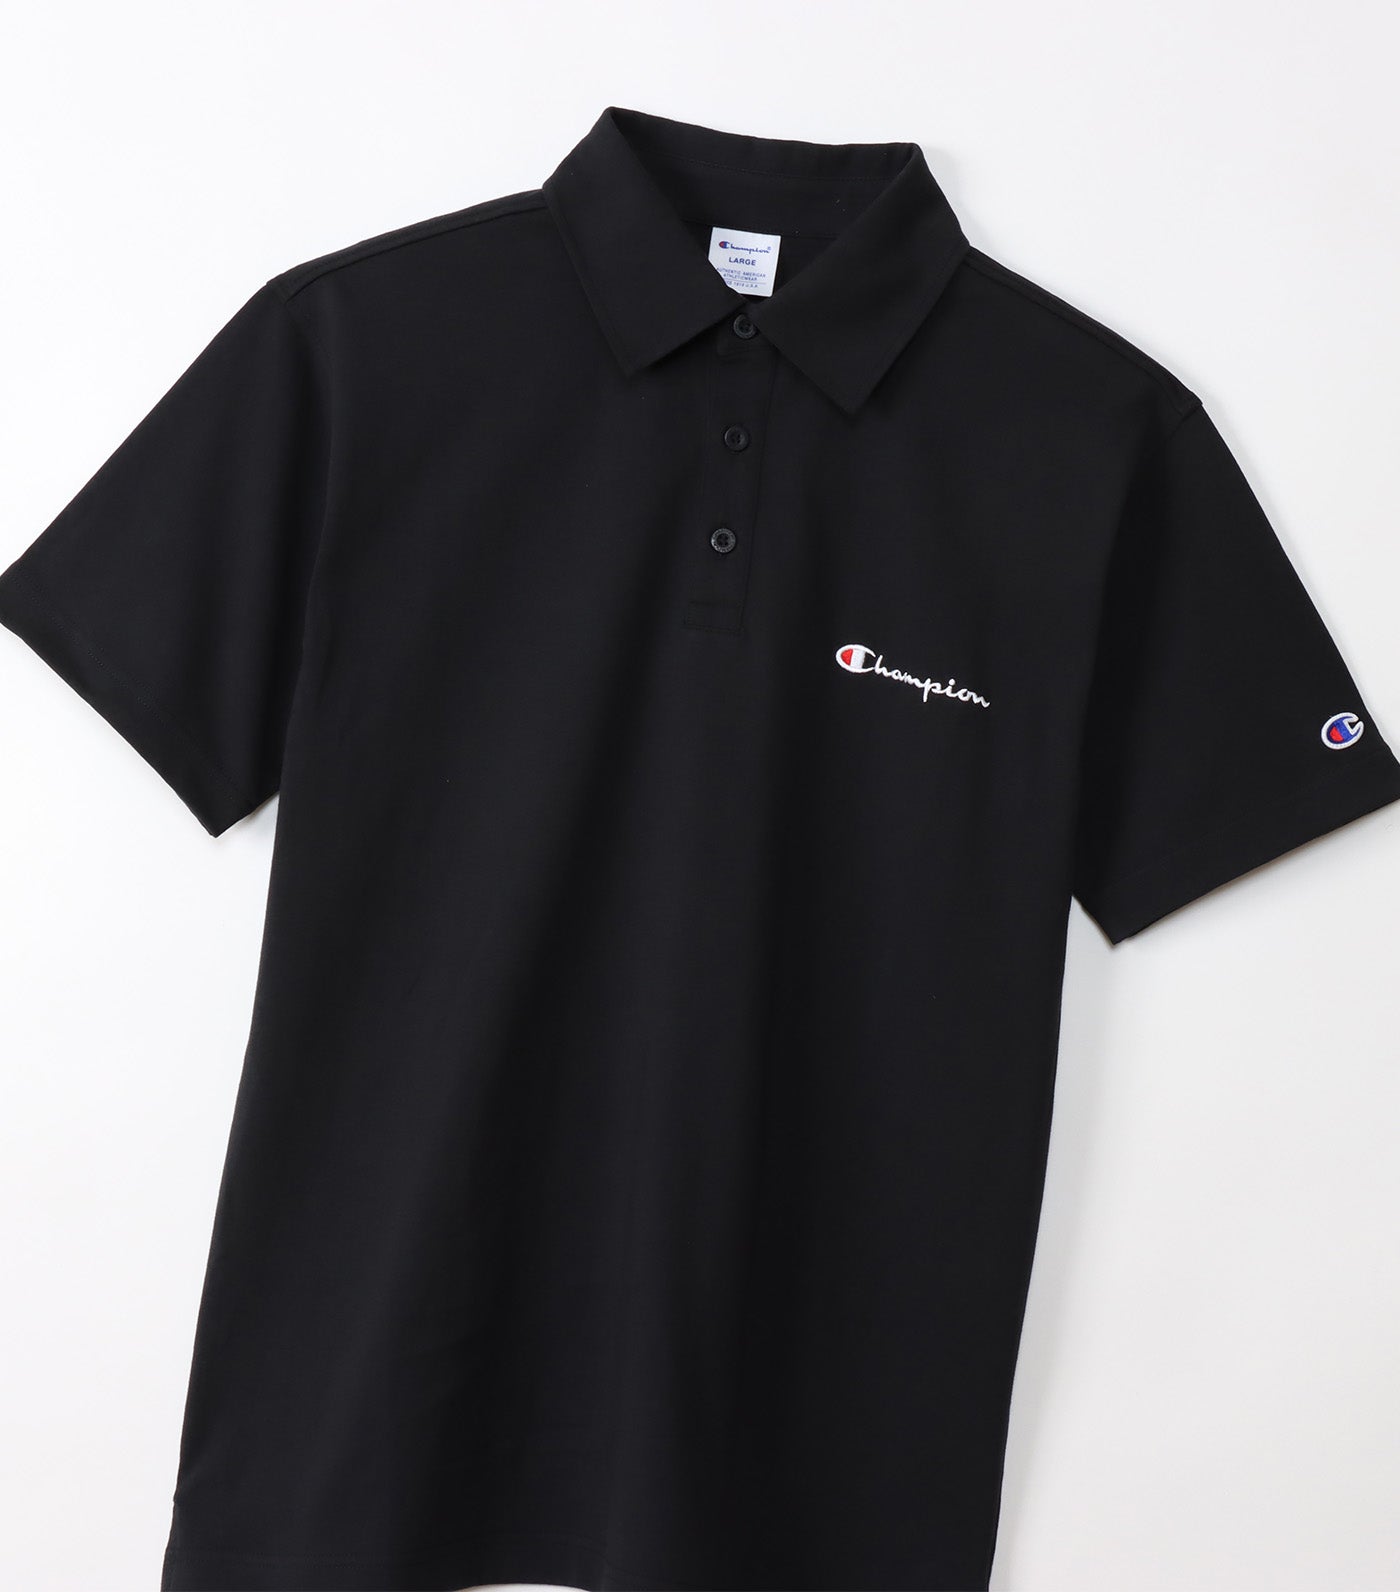 Japan Short Sleeve Polo Shirt Black